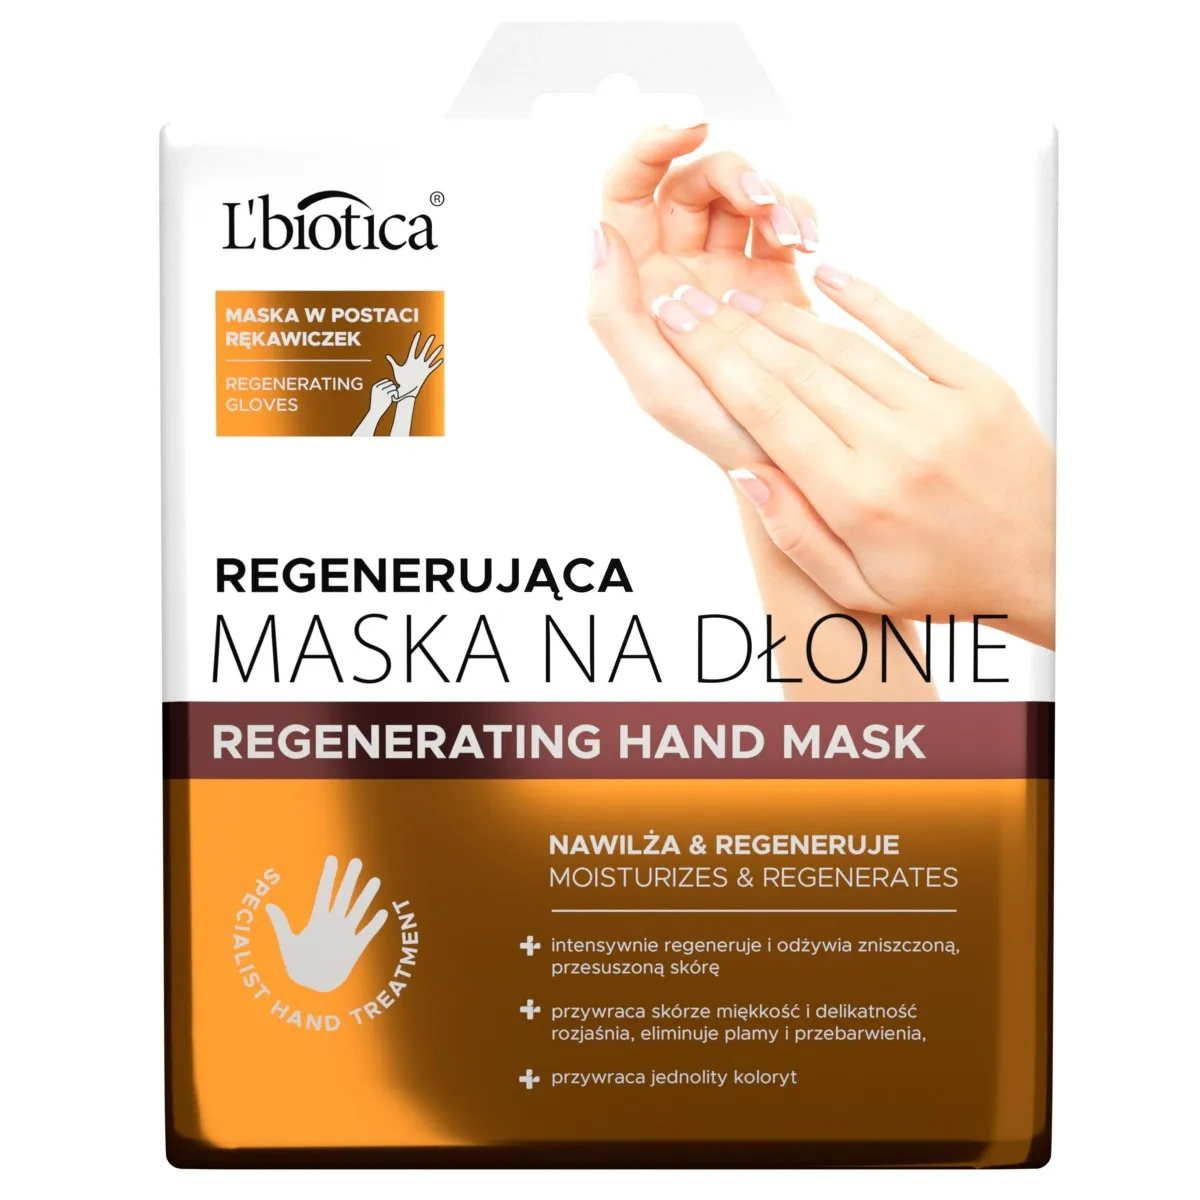 L'biotica, regenerująca maska na dłonie w postaci nasączonych rękawiczek, 26 g